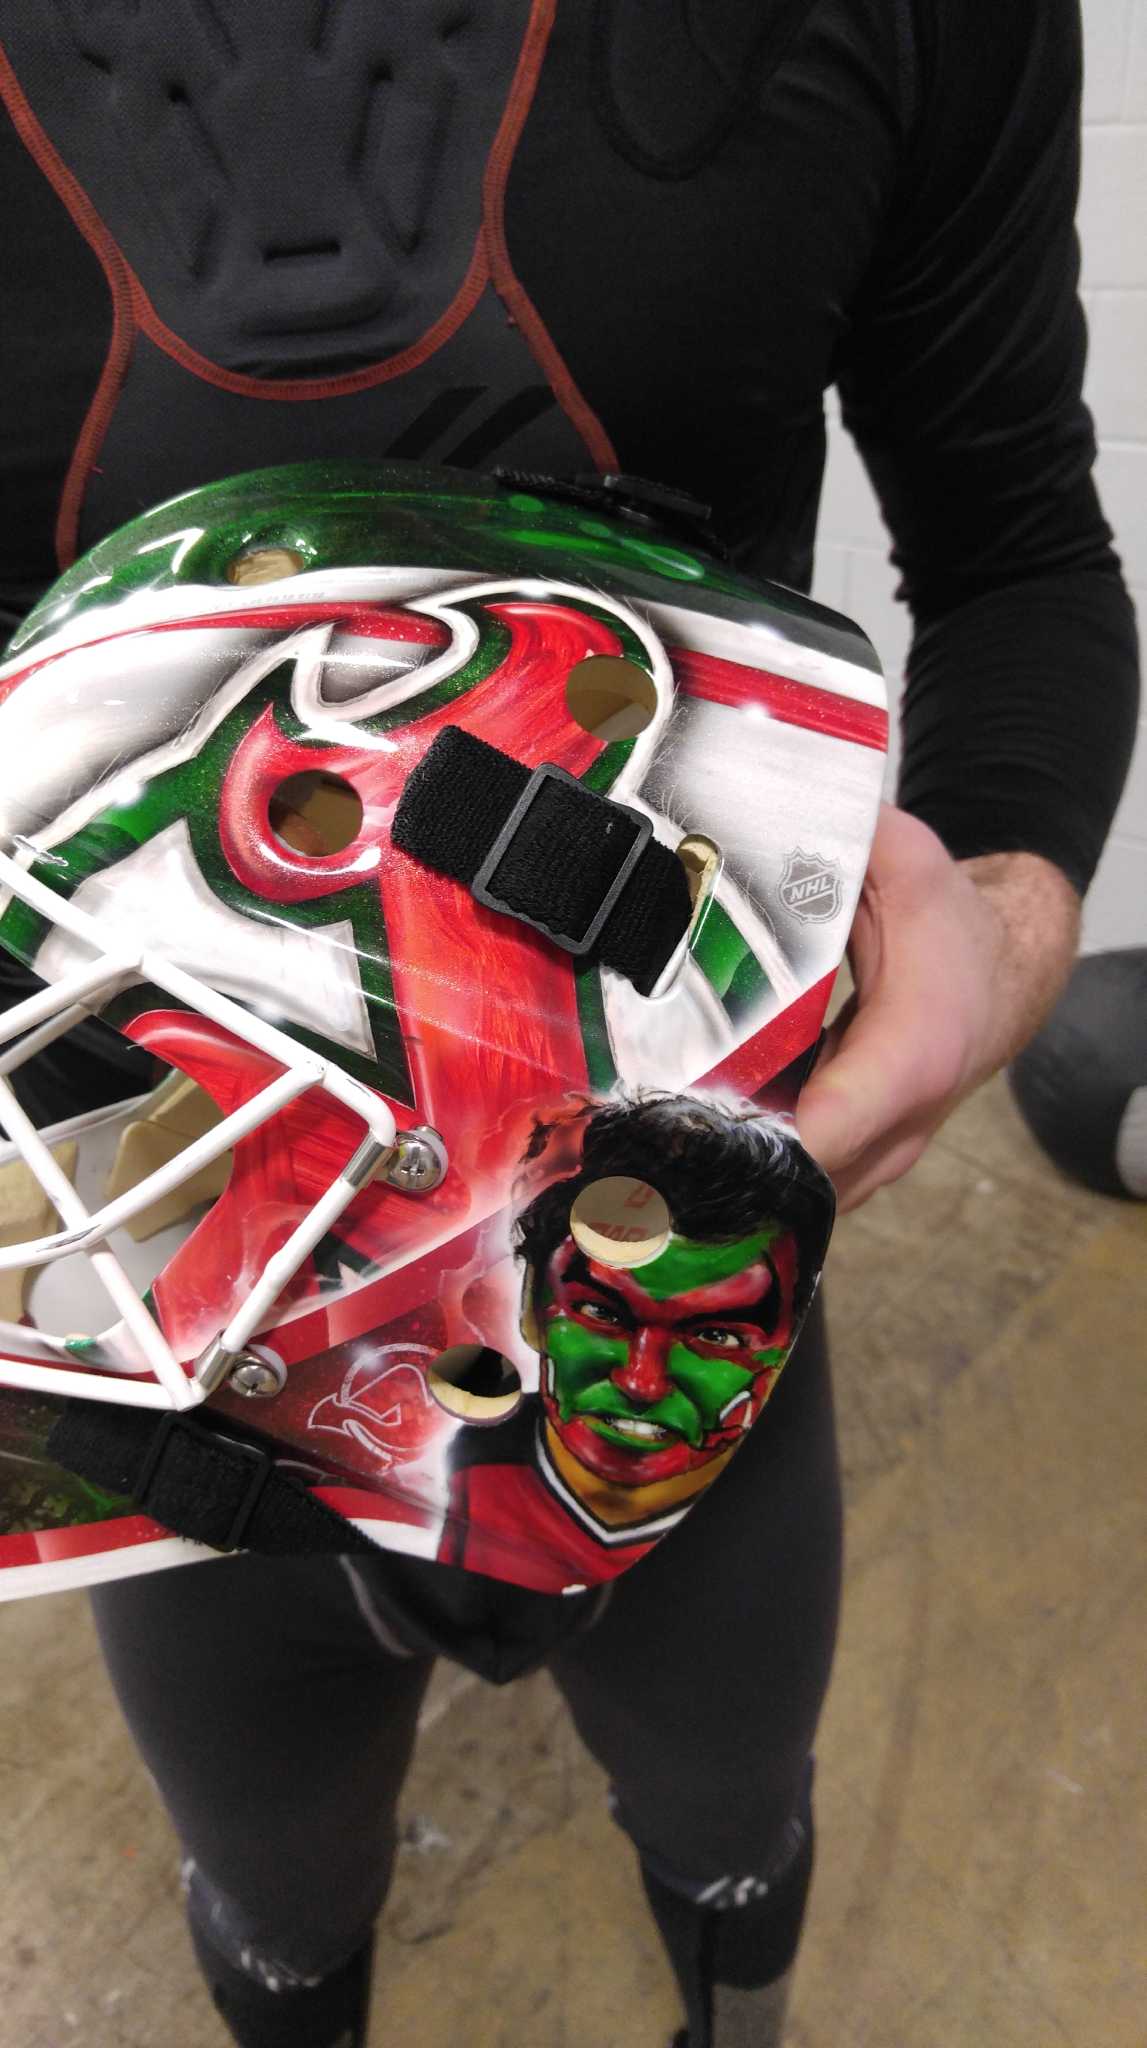 Devils prospect explains his awesome Seinfeld-inspired goalie mask